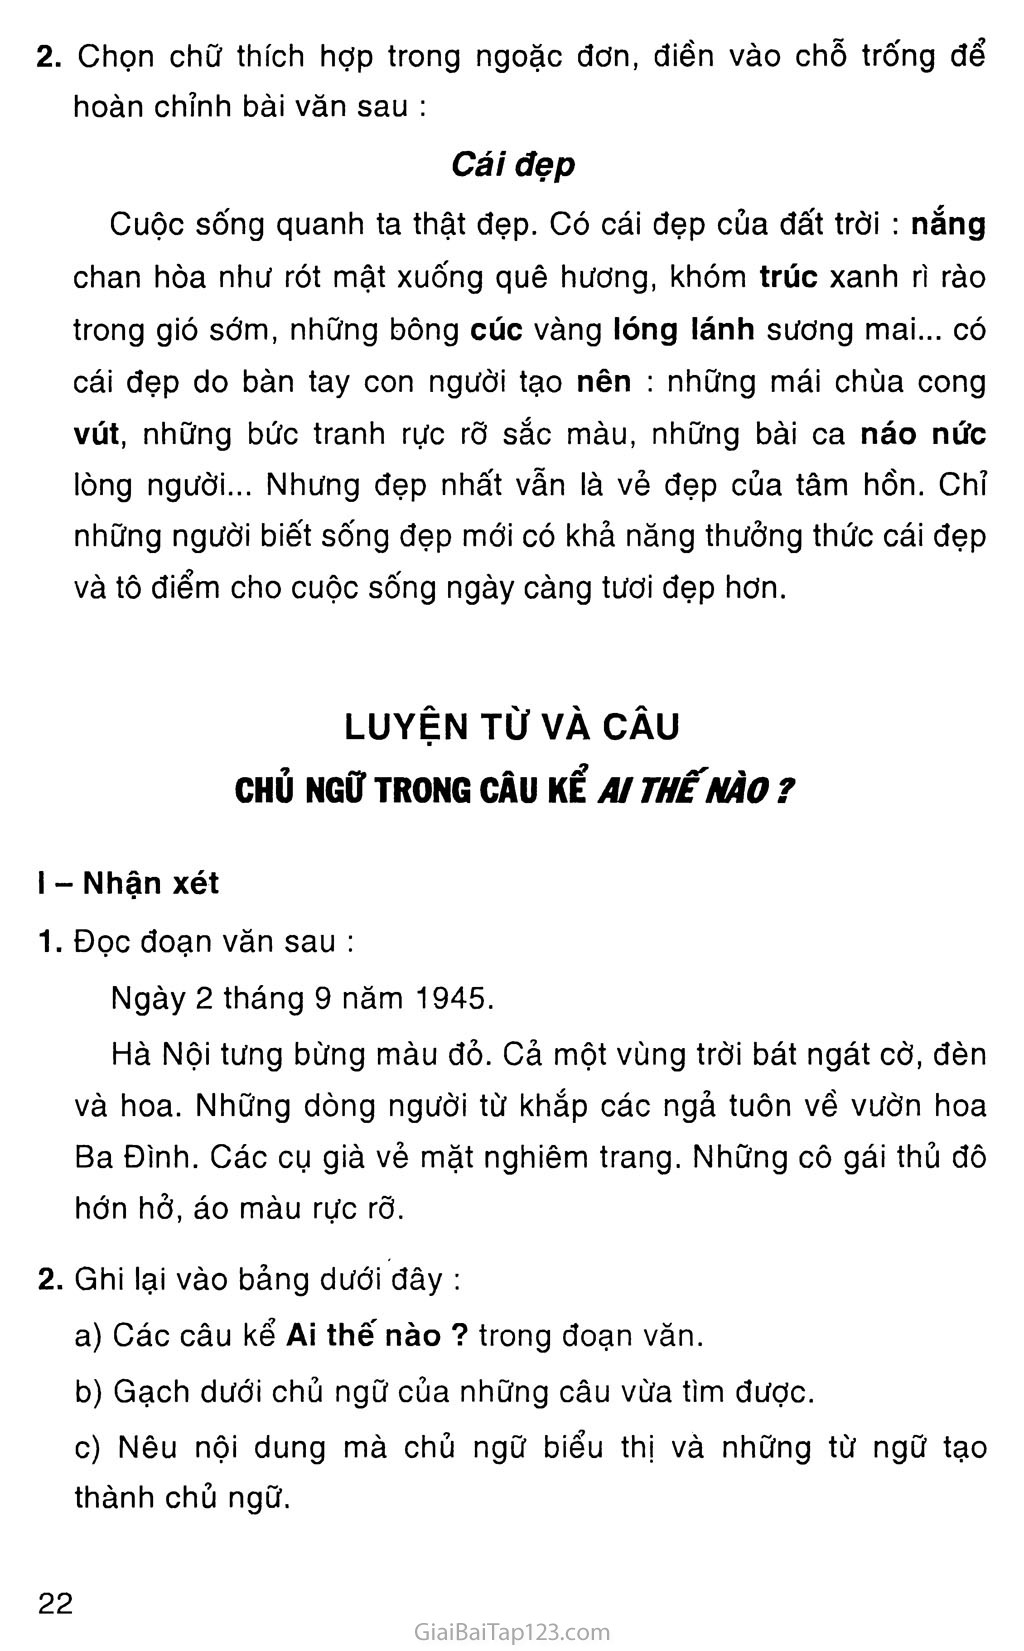 Giải vở bài tập Tiếng Việt lớp 4 tập 2 Tuần 22